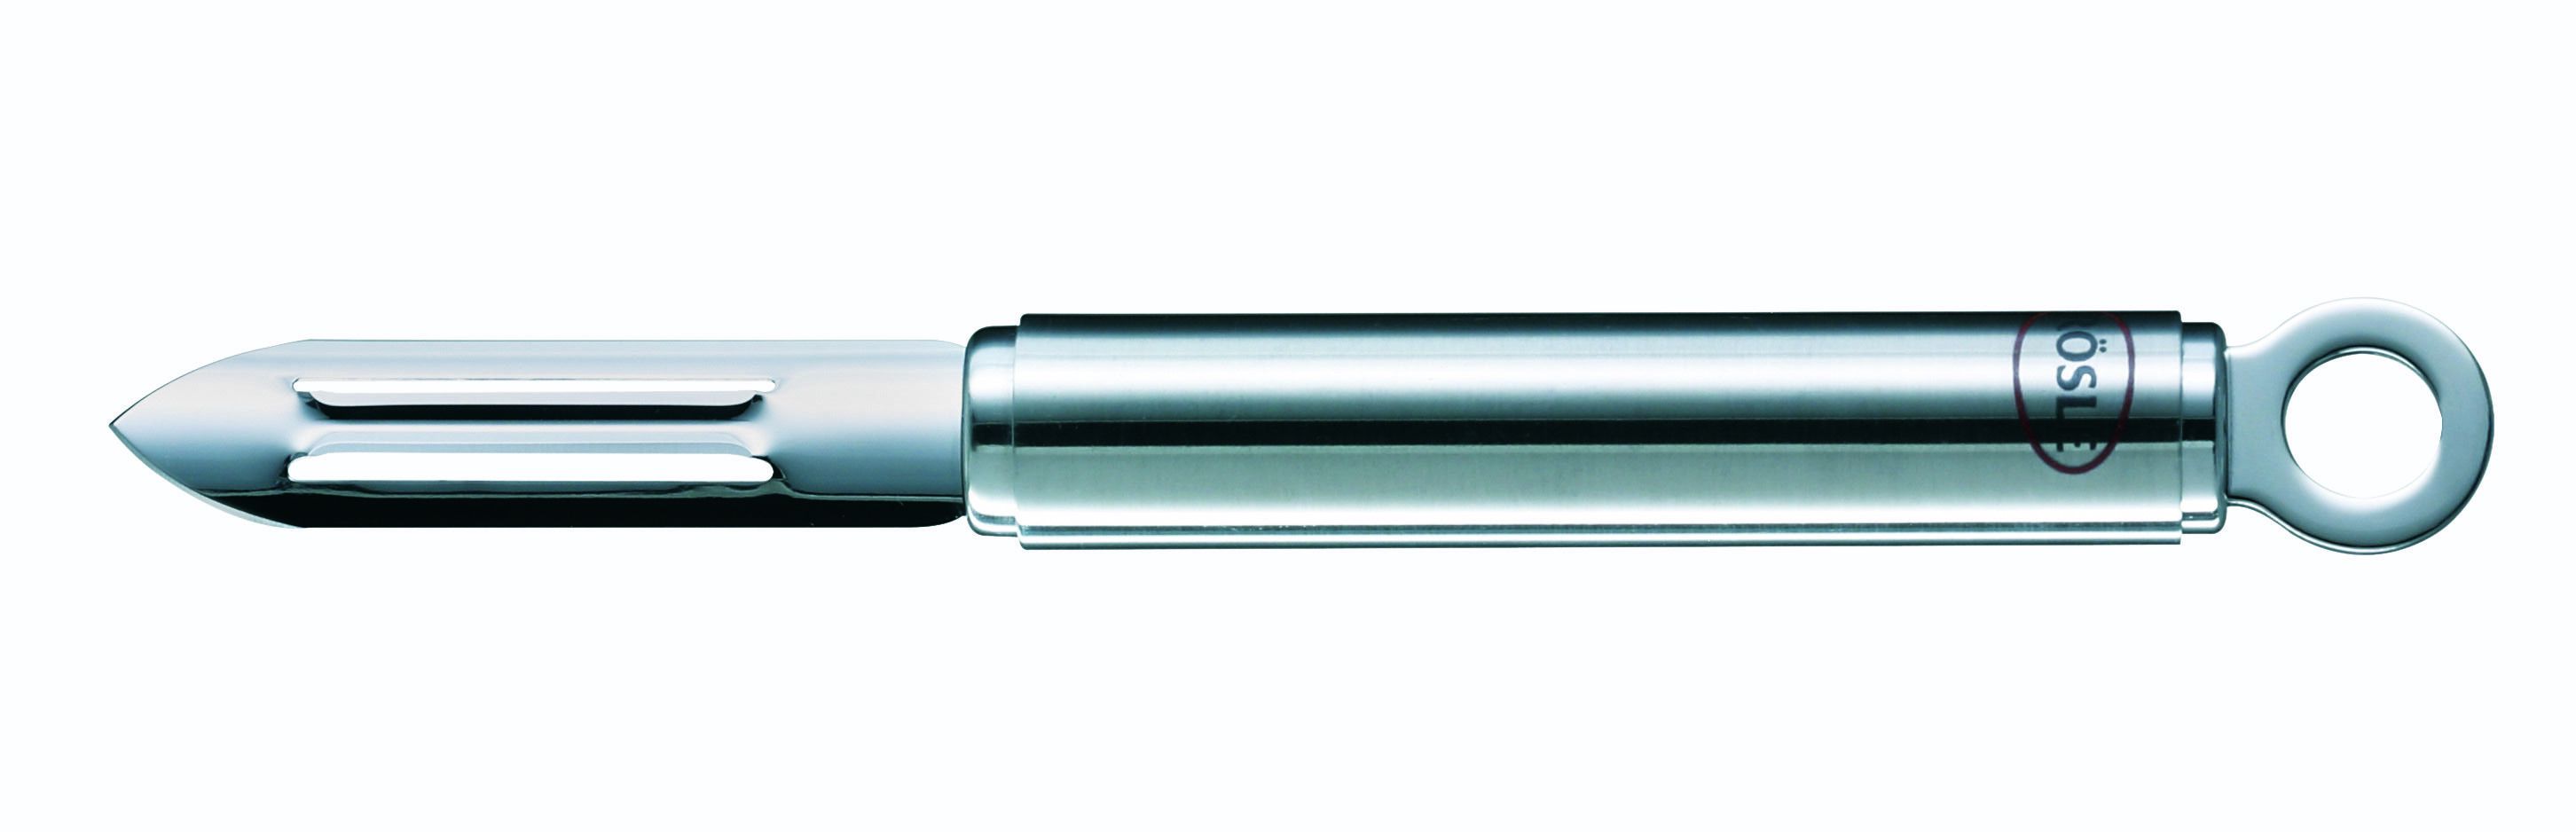 maagd havik Schrijfmachine Rosle Dunschiller Round - RVS - 19 cm kopen? | Cookinglife